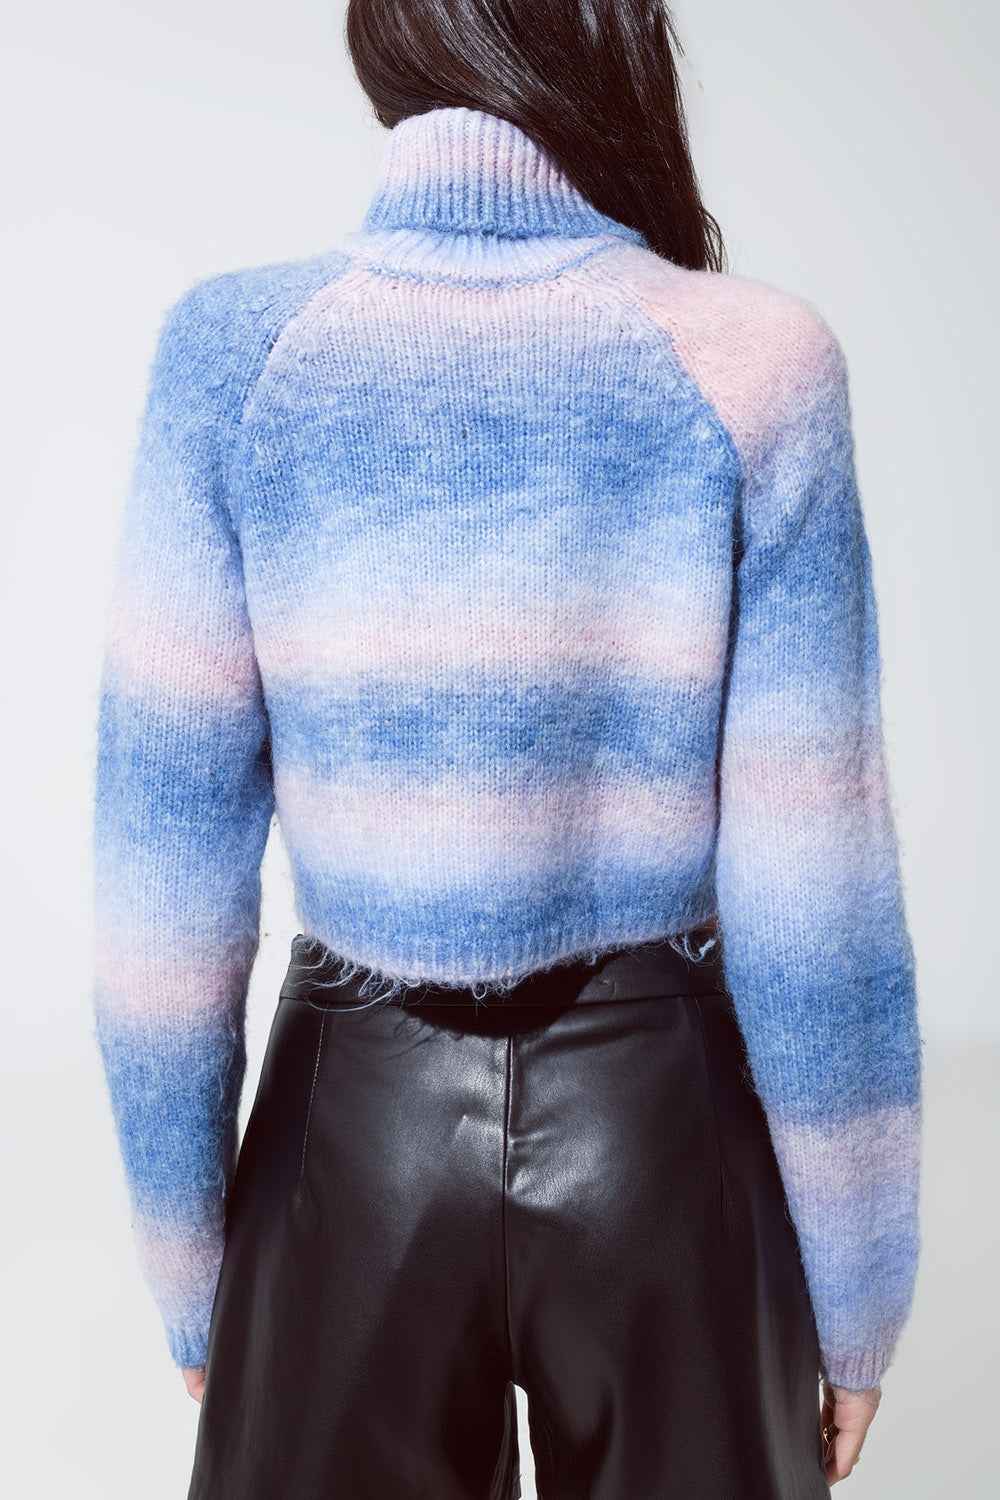 Maglione dolcevita in maglia vaporosa in blu e rosa degradé